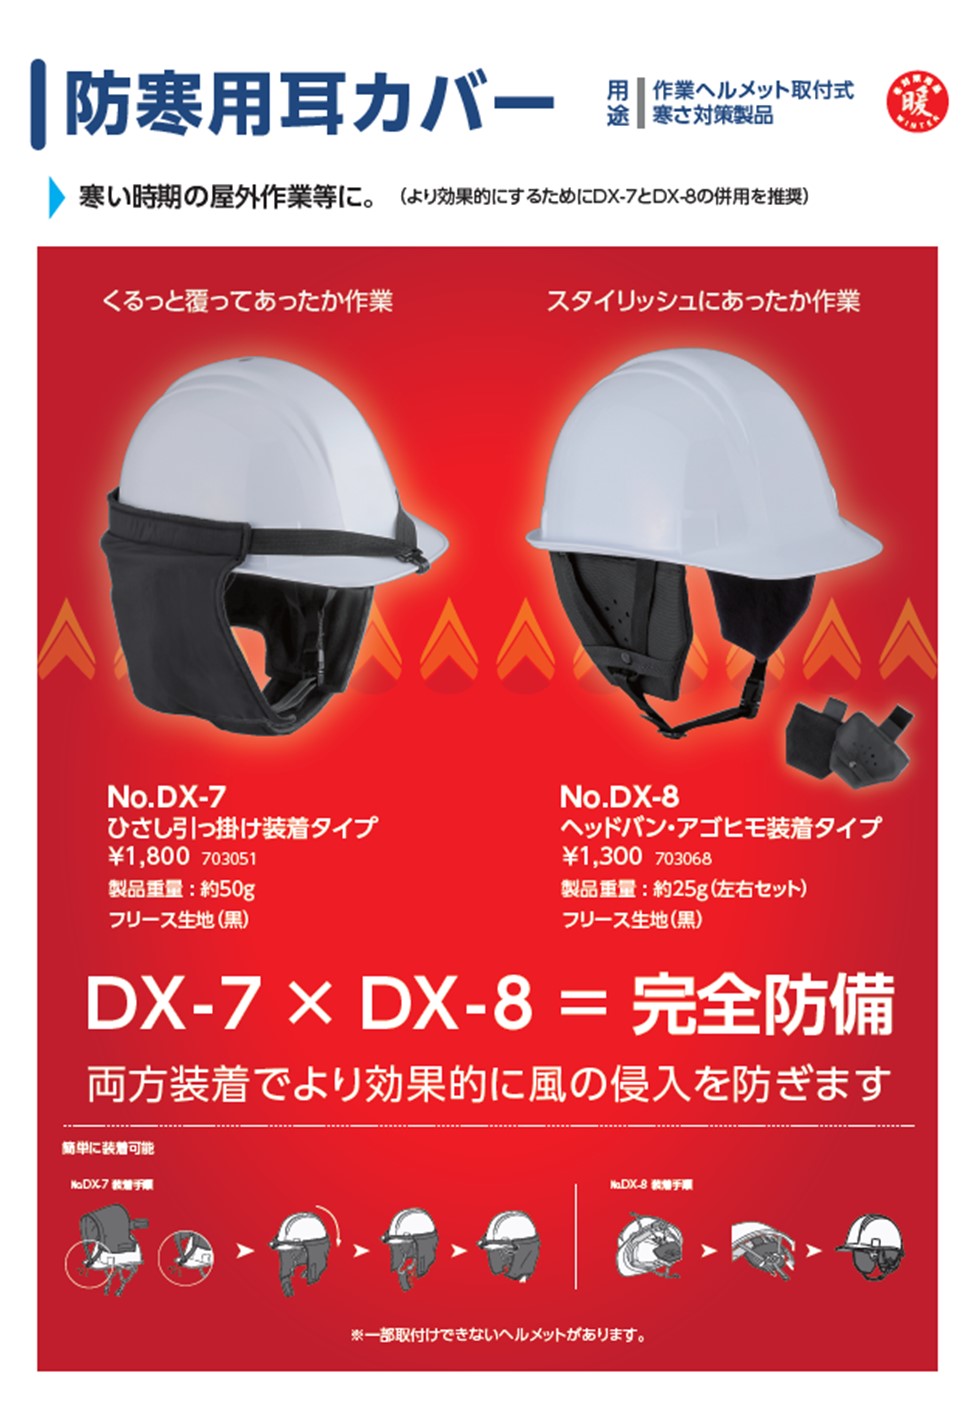 新製品情報（No.DX-7,DX-8） | 東洋物産工業株式会社